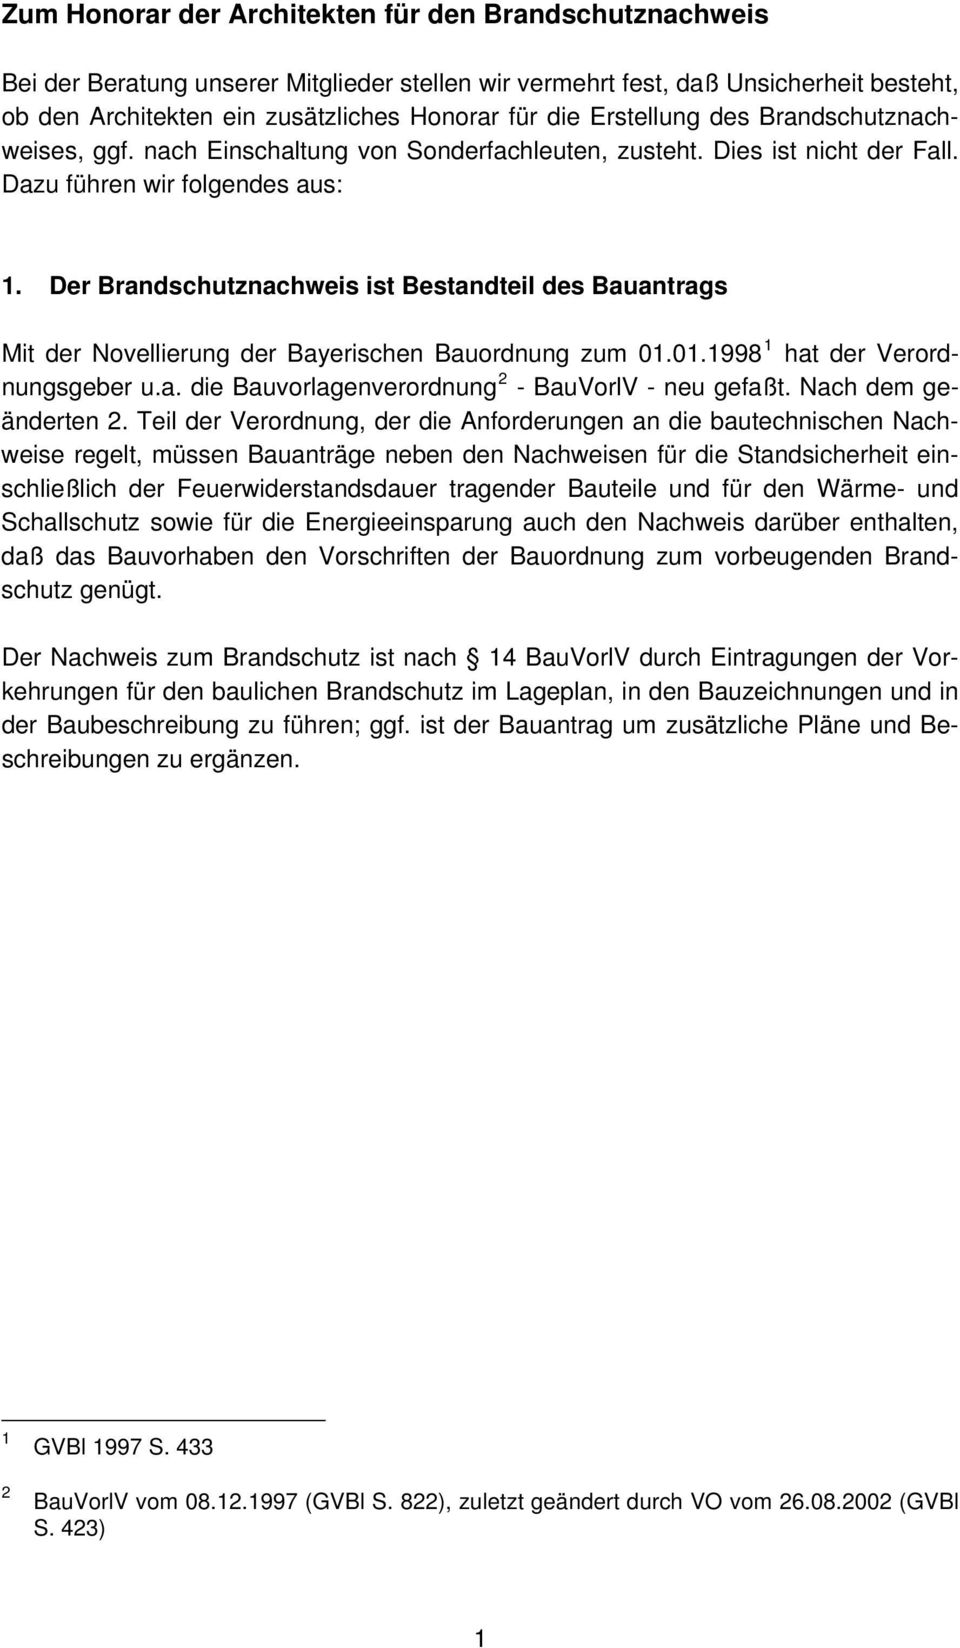 Der Brandschutznachweis ist Bestandteil des Bauantrags Mit der Novellierung der Bayerischen Bauordnung zum 01.01.1998 1 hat der Verordnungsgeber u.a. die Bauvorlagenverordnung 2 - BauVorlV - neu gefaßt.